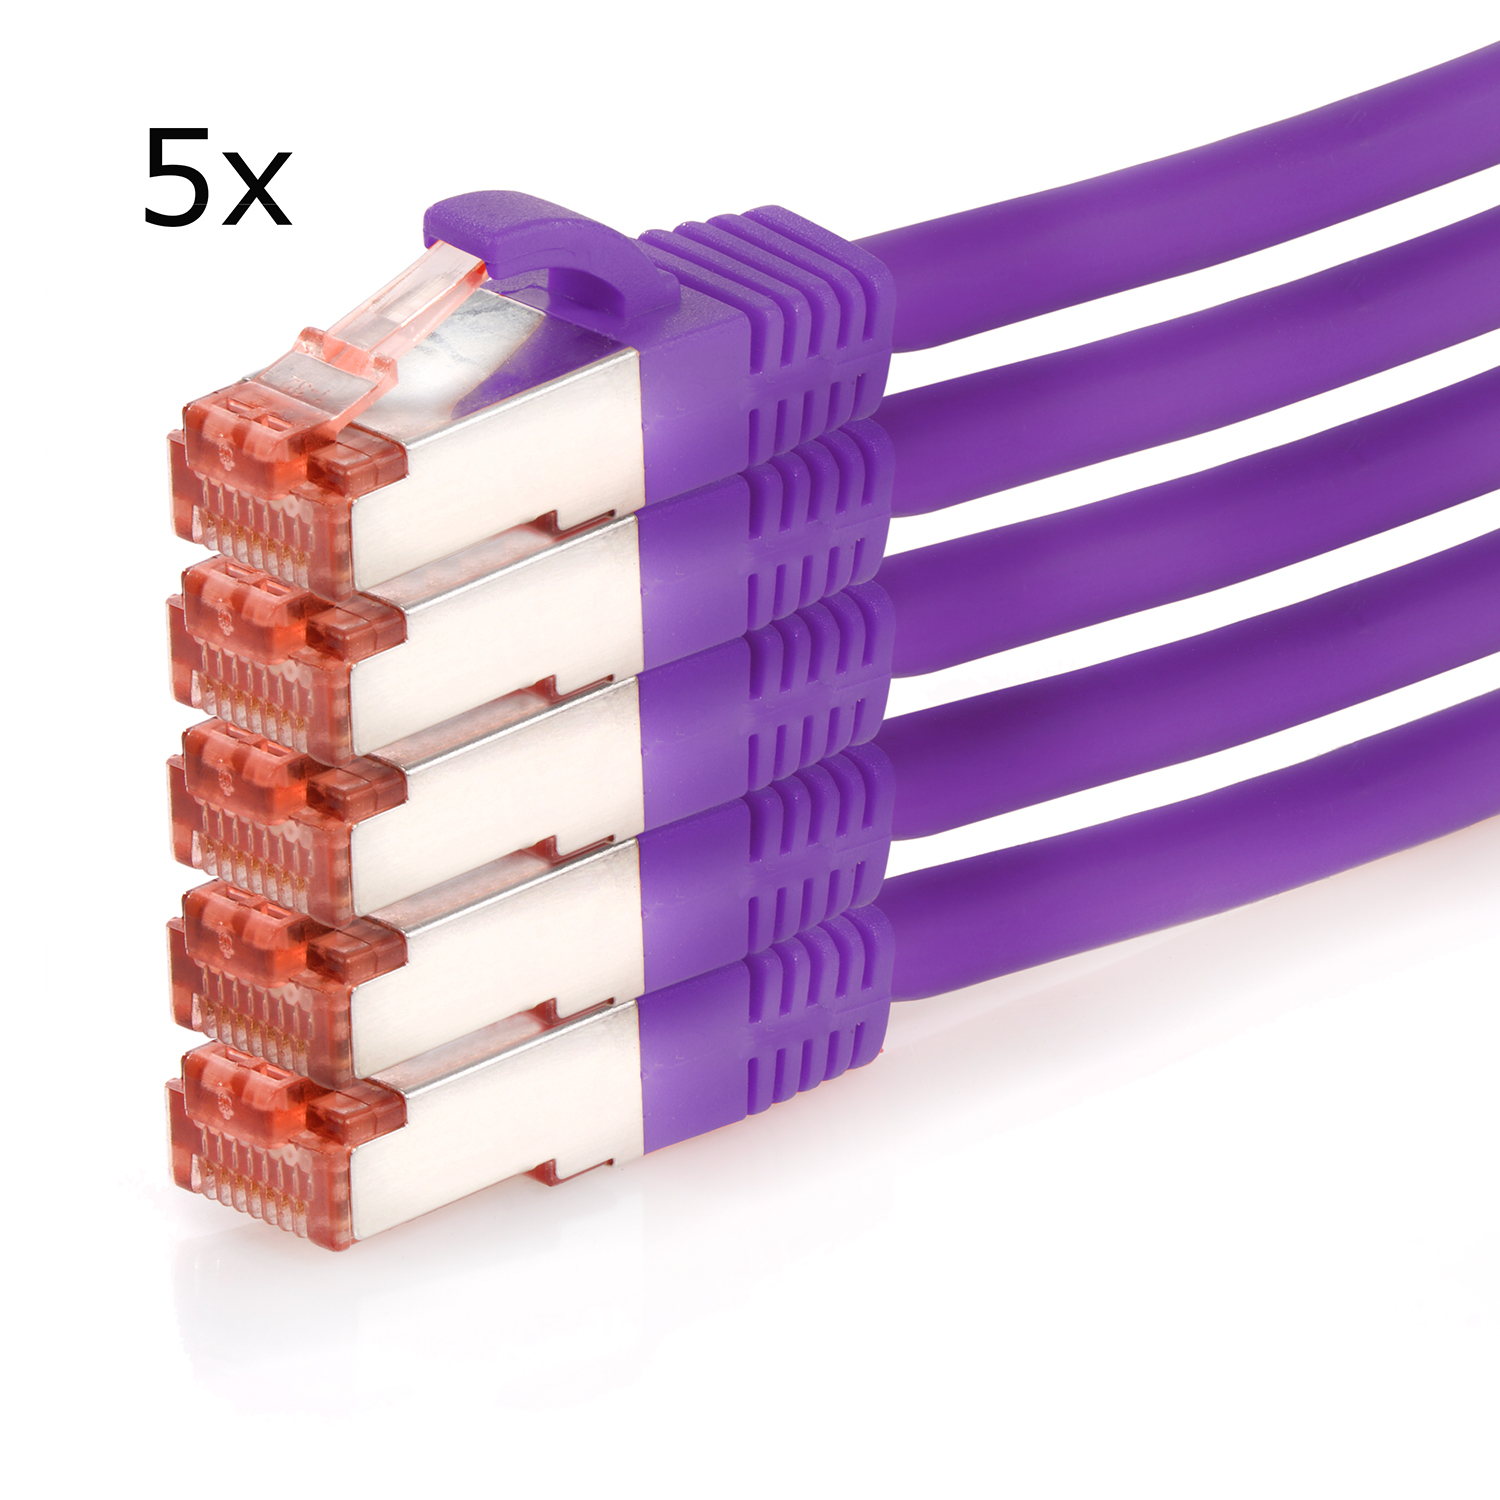 TPFNET Pack Netzwerkkabel, 1m 5er m / 1 1000Mbit, violett, Patchkabel S/FTP Netzwerkkabel